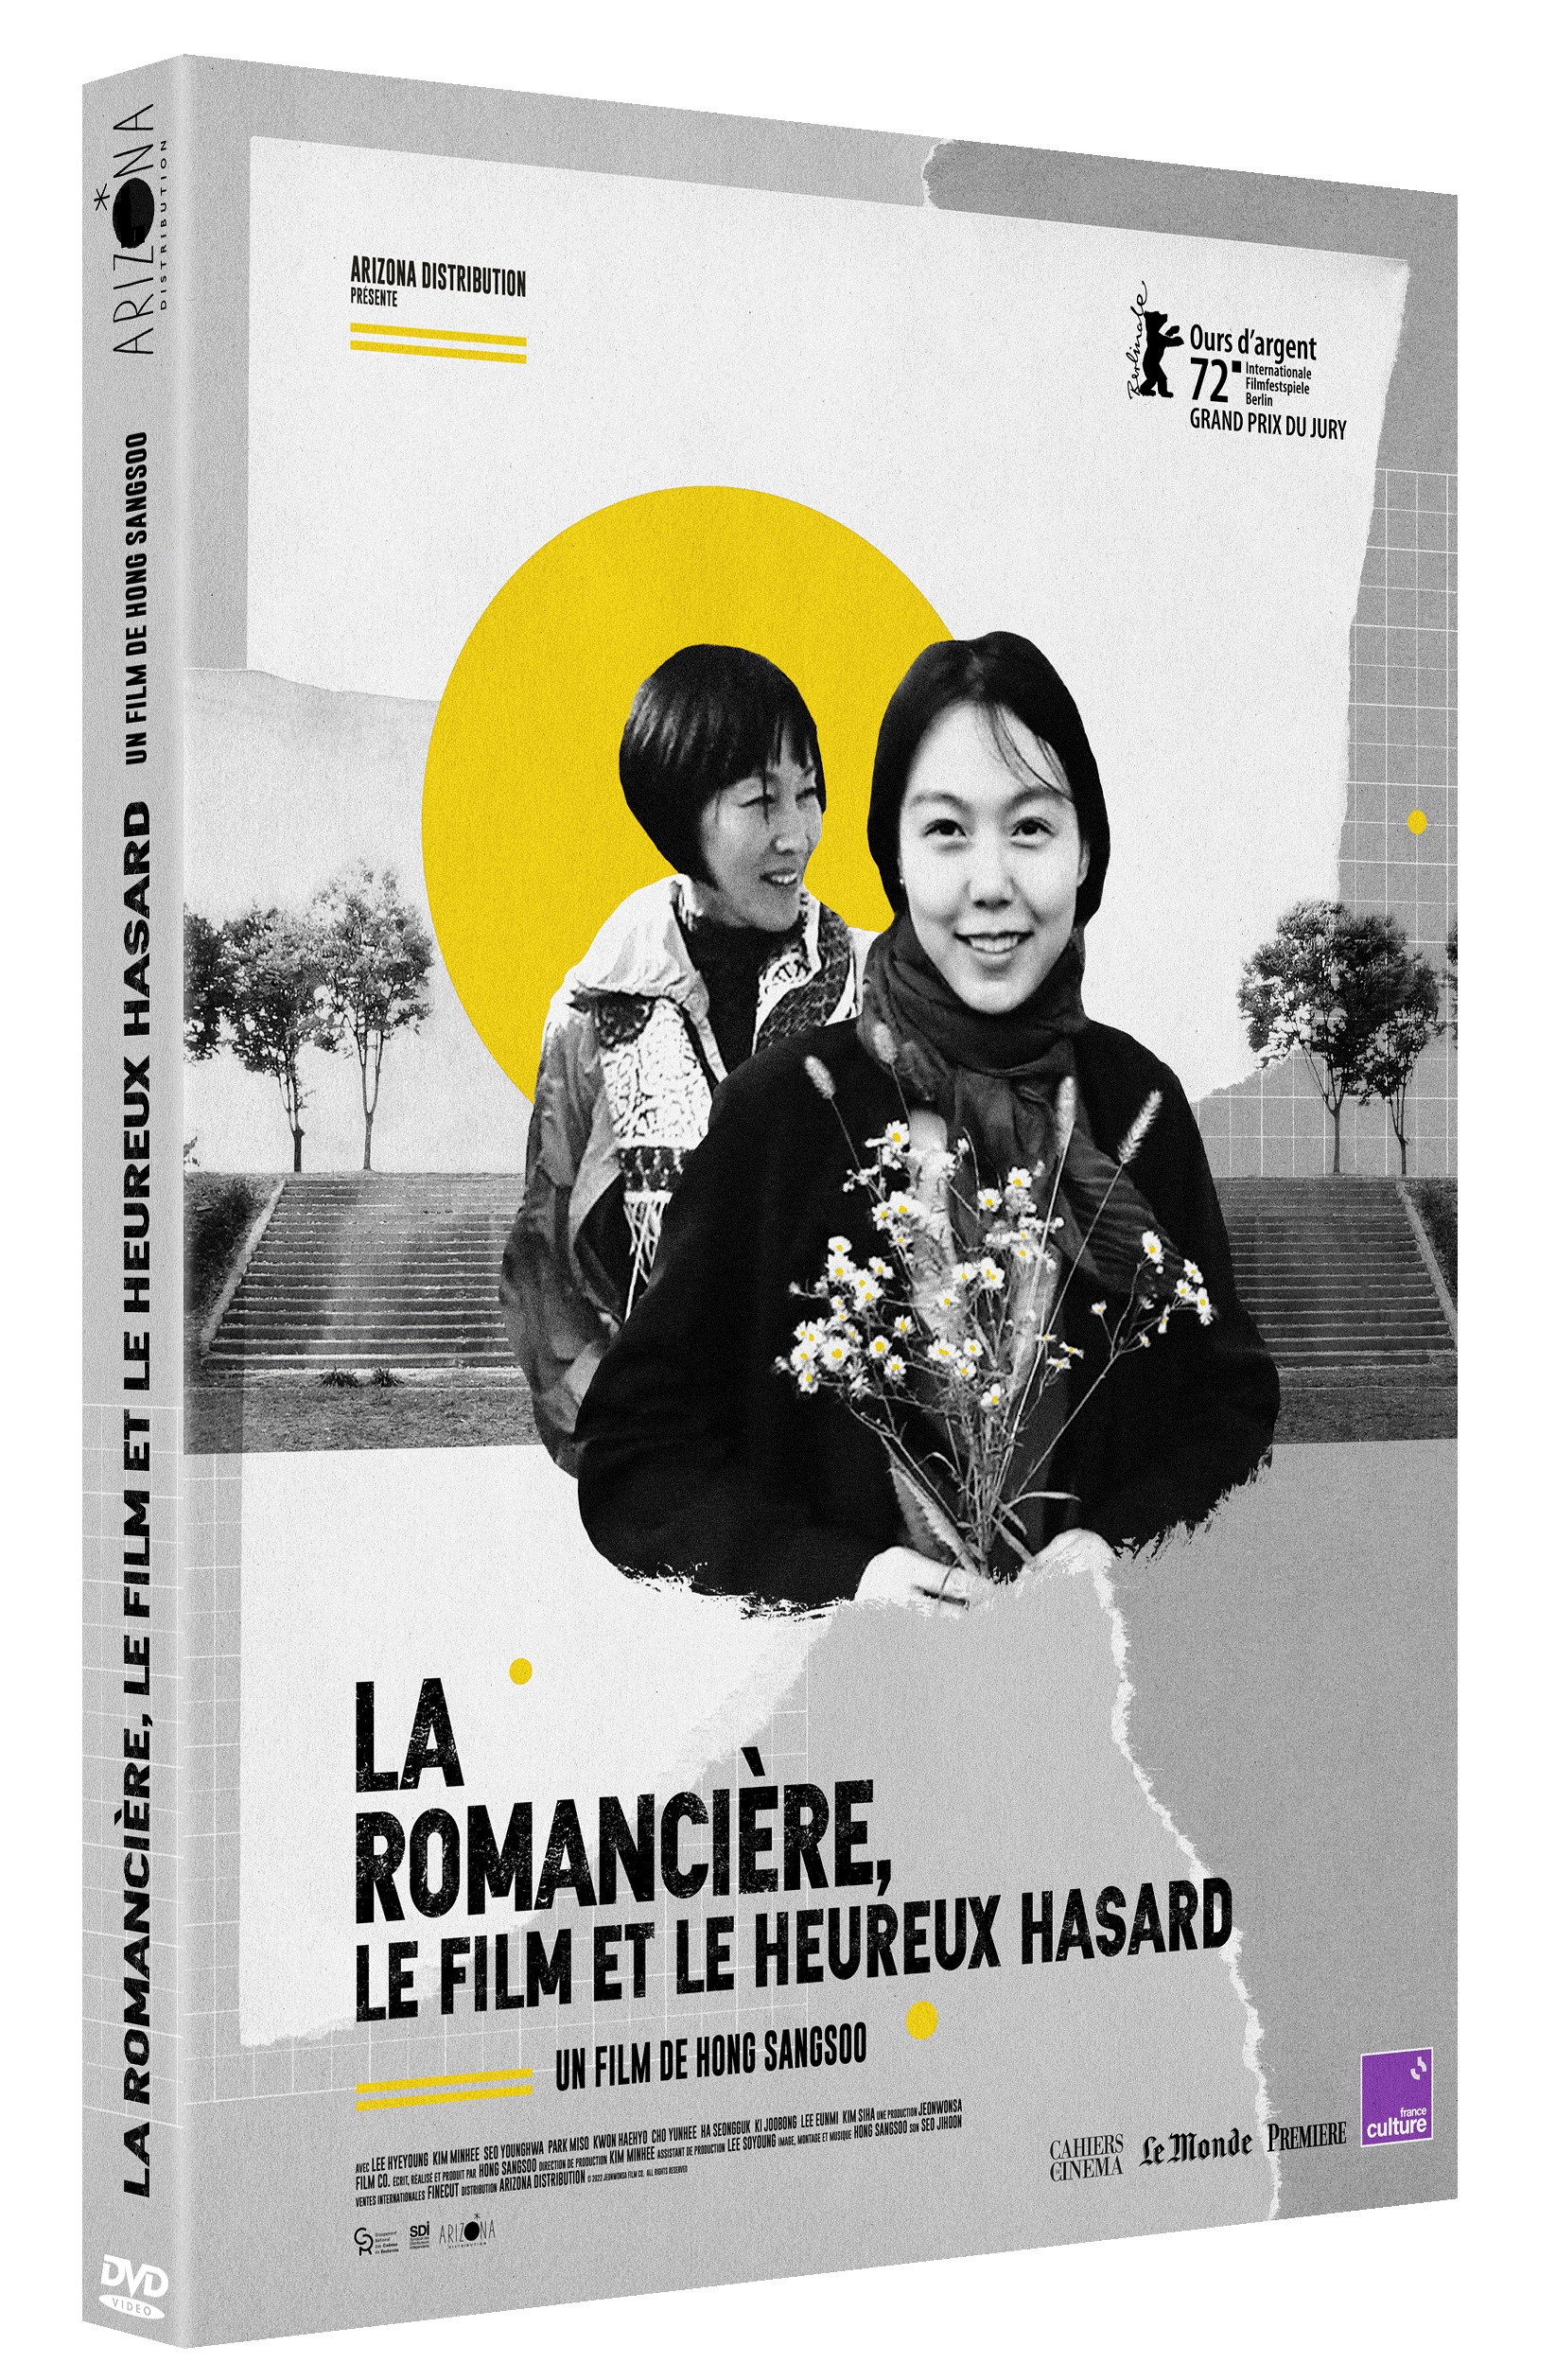 LA ROMANCIERE, LE FILM ET L'HEUREUX HASARD - DVD - EDITION LIMITEE